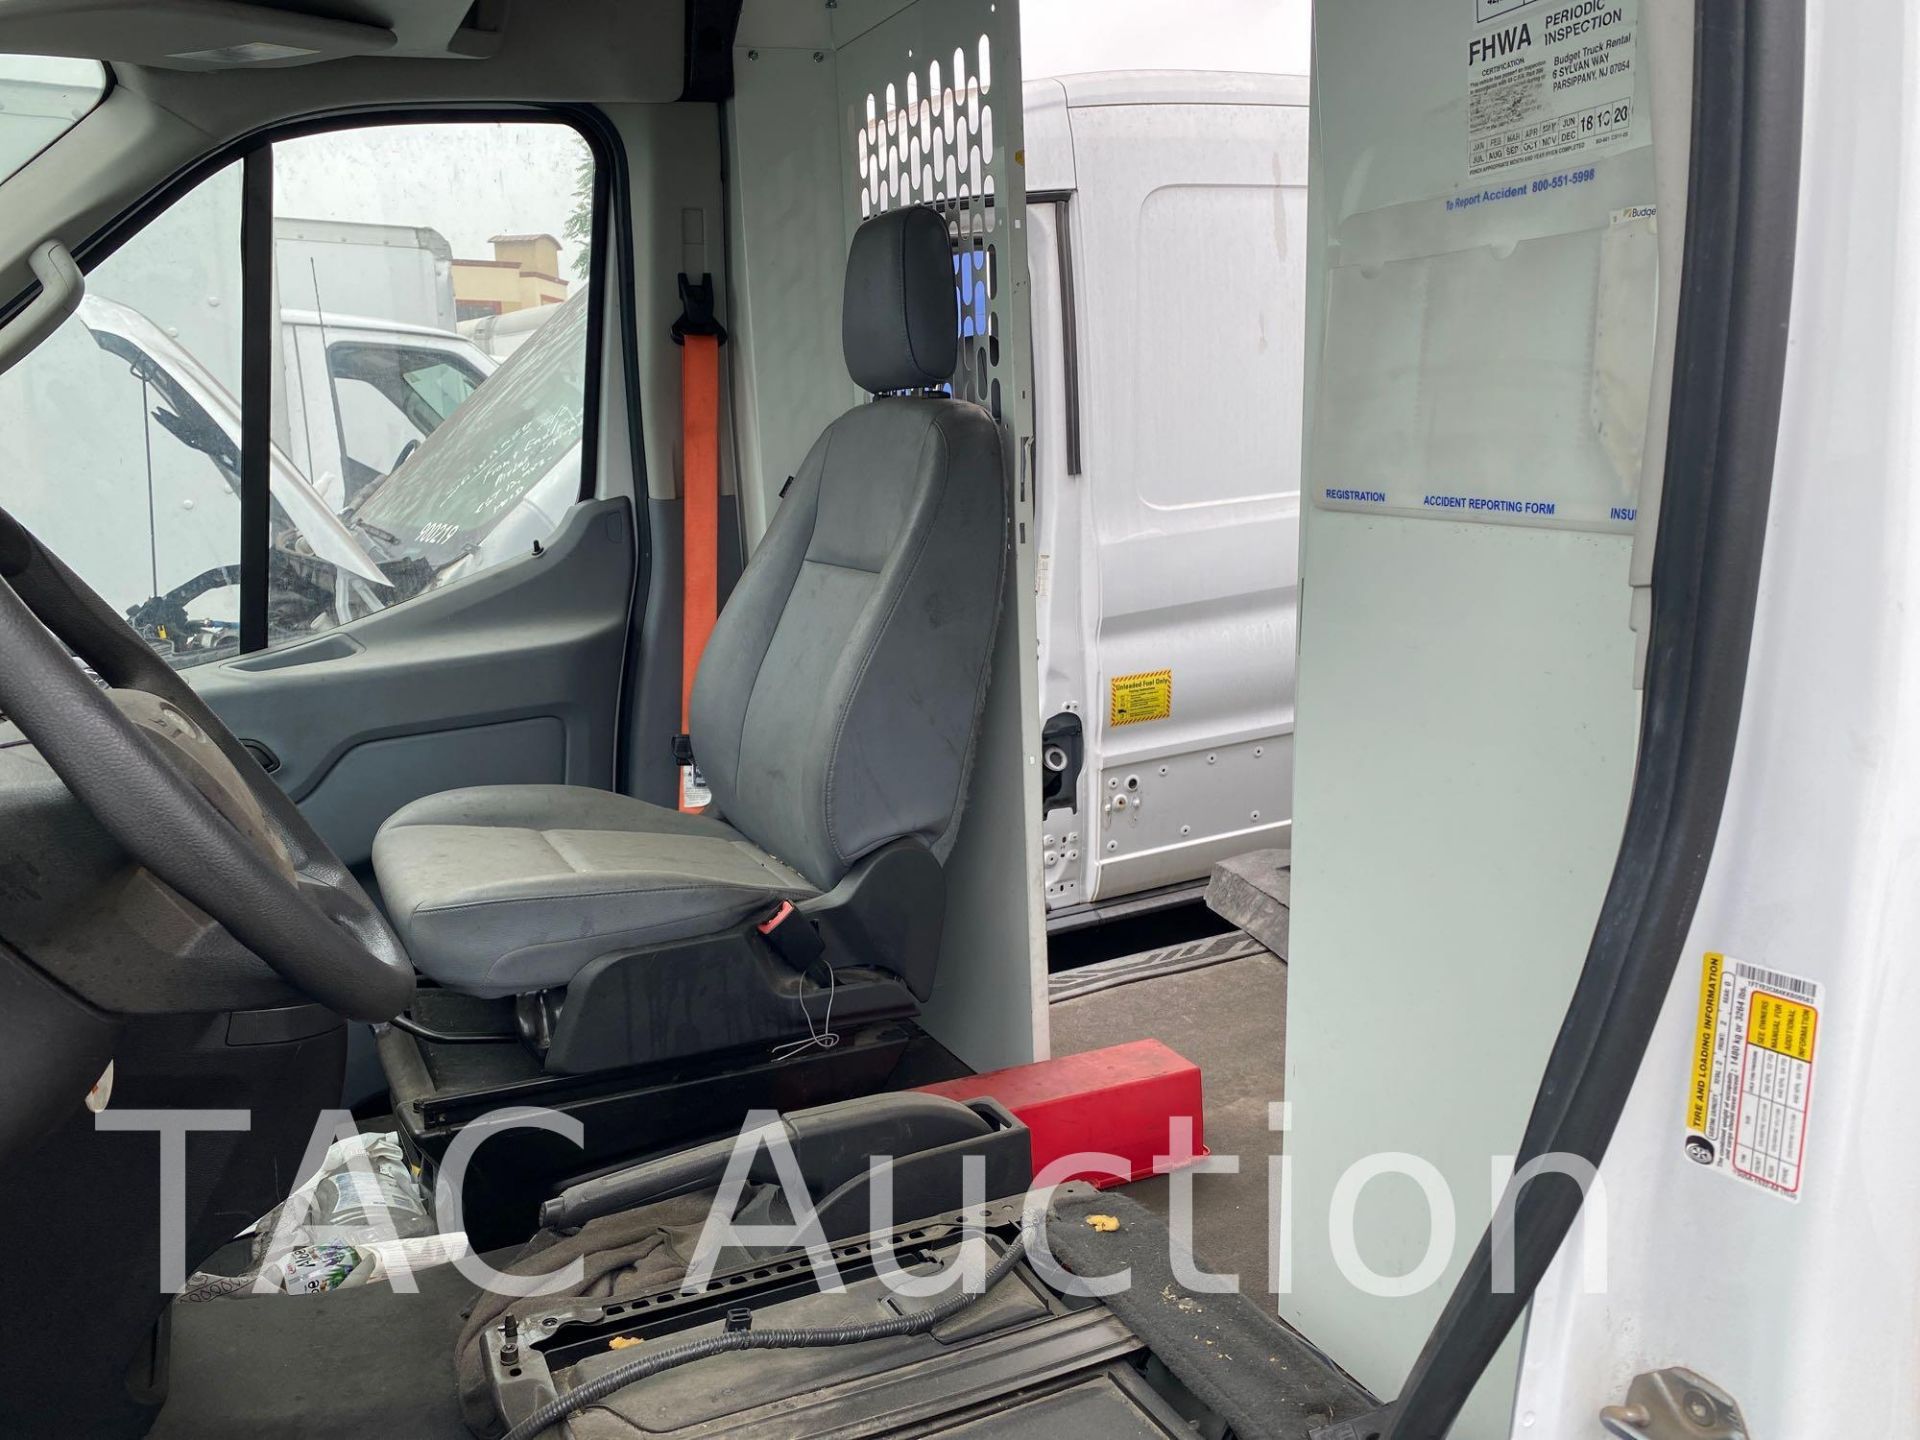 2019 Ford Transit 150 Cargo Van - Image 13 of 31